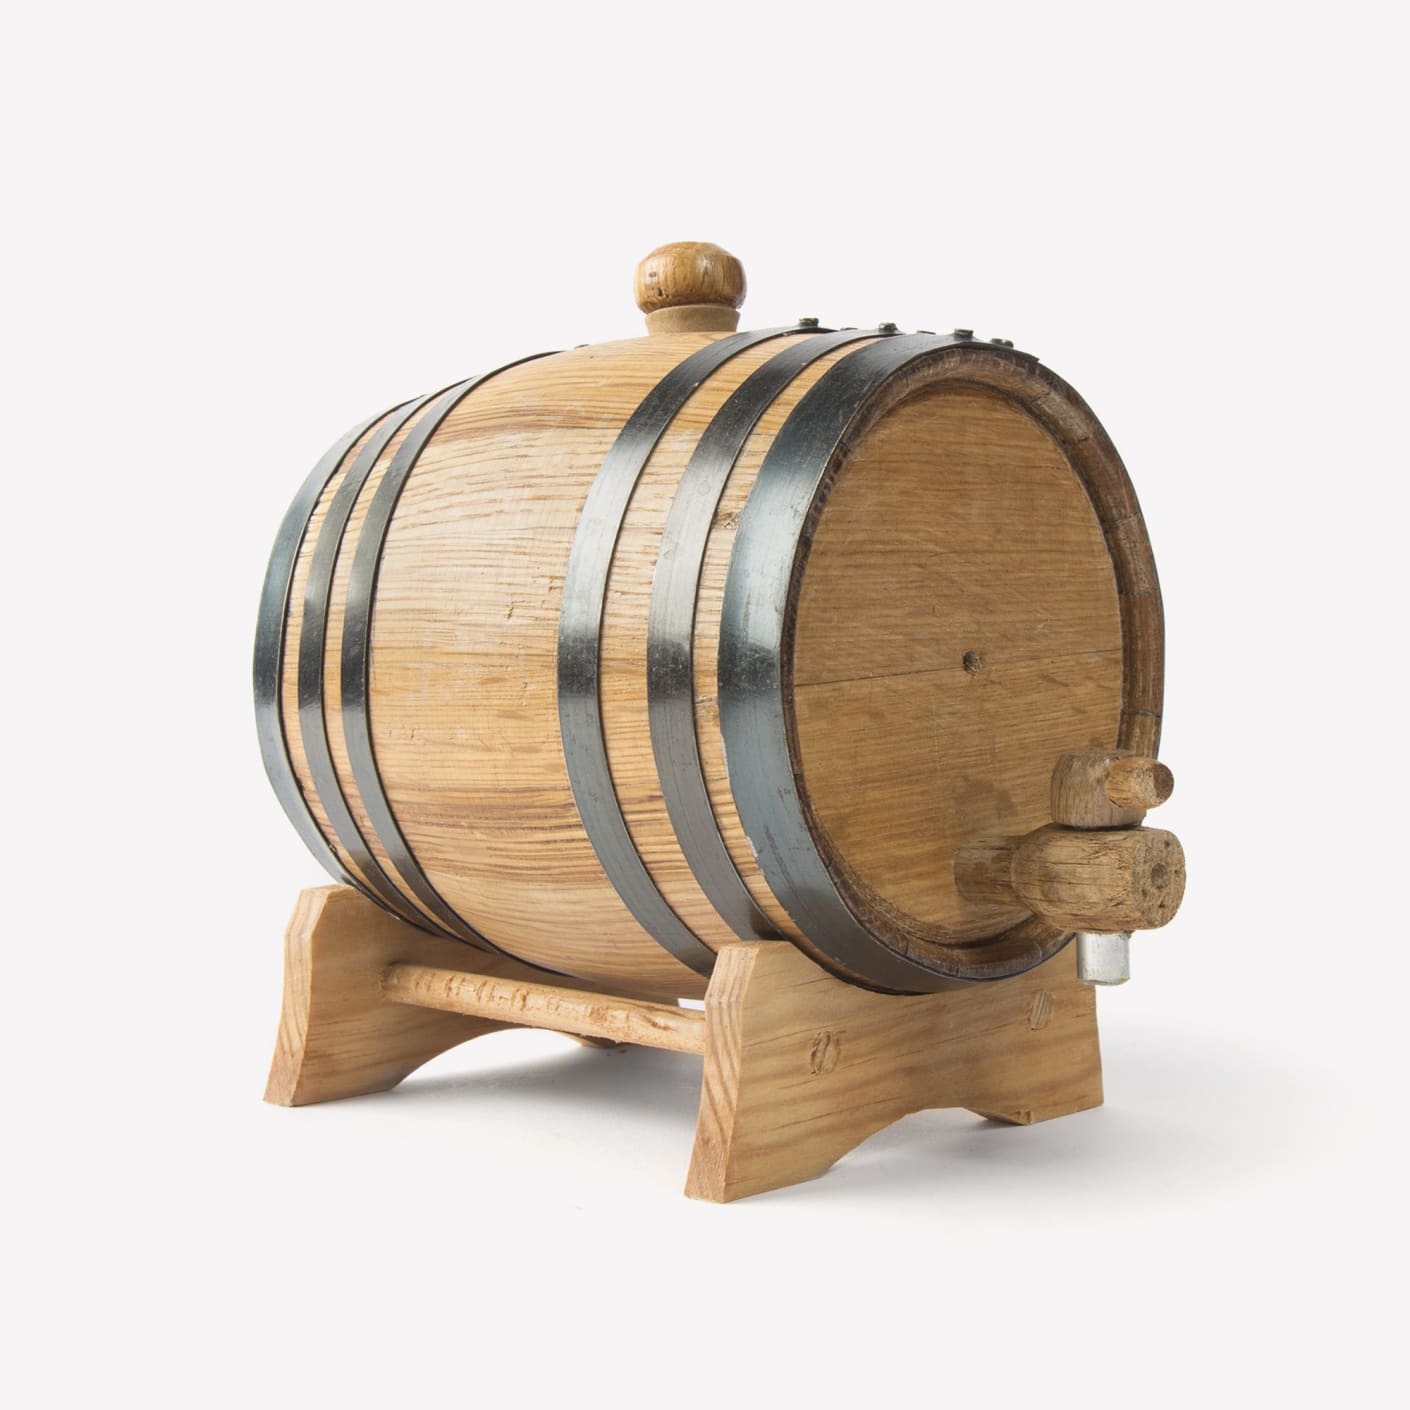 Small Pet Feeder - Bourbon Barrel Furniture of the Bluegrass